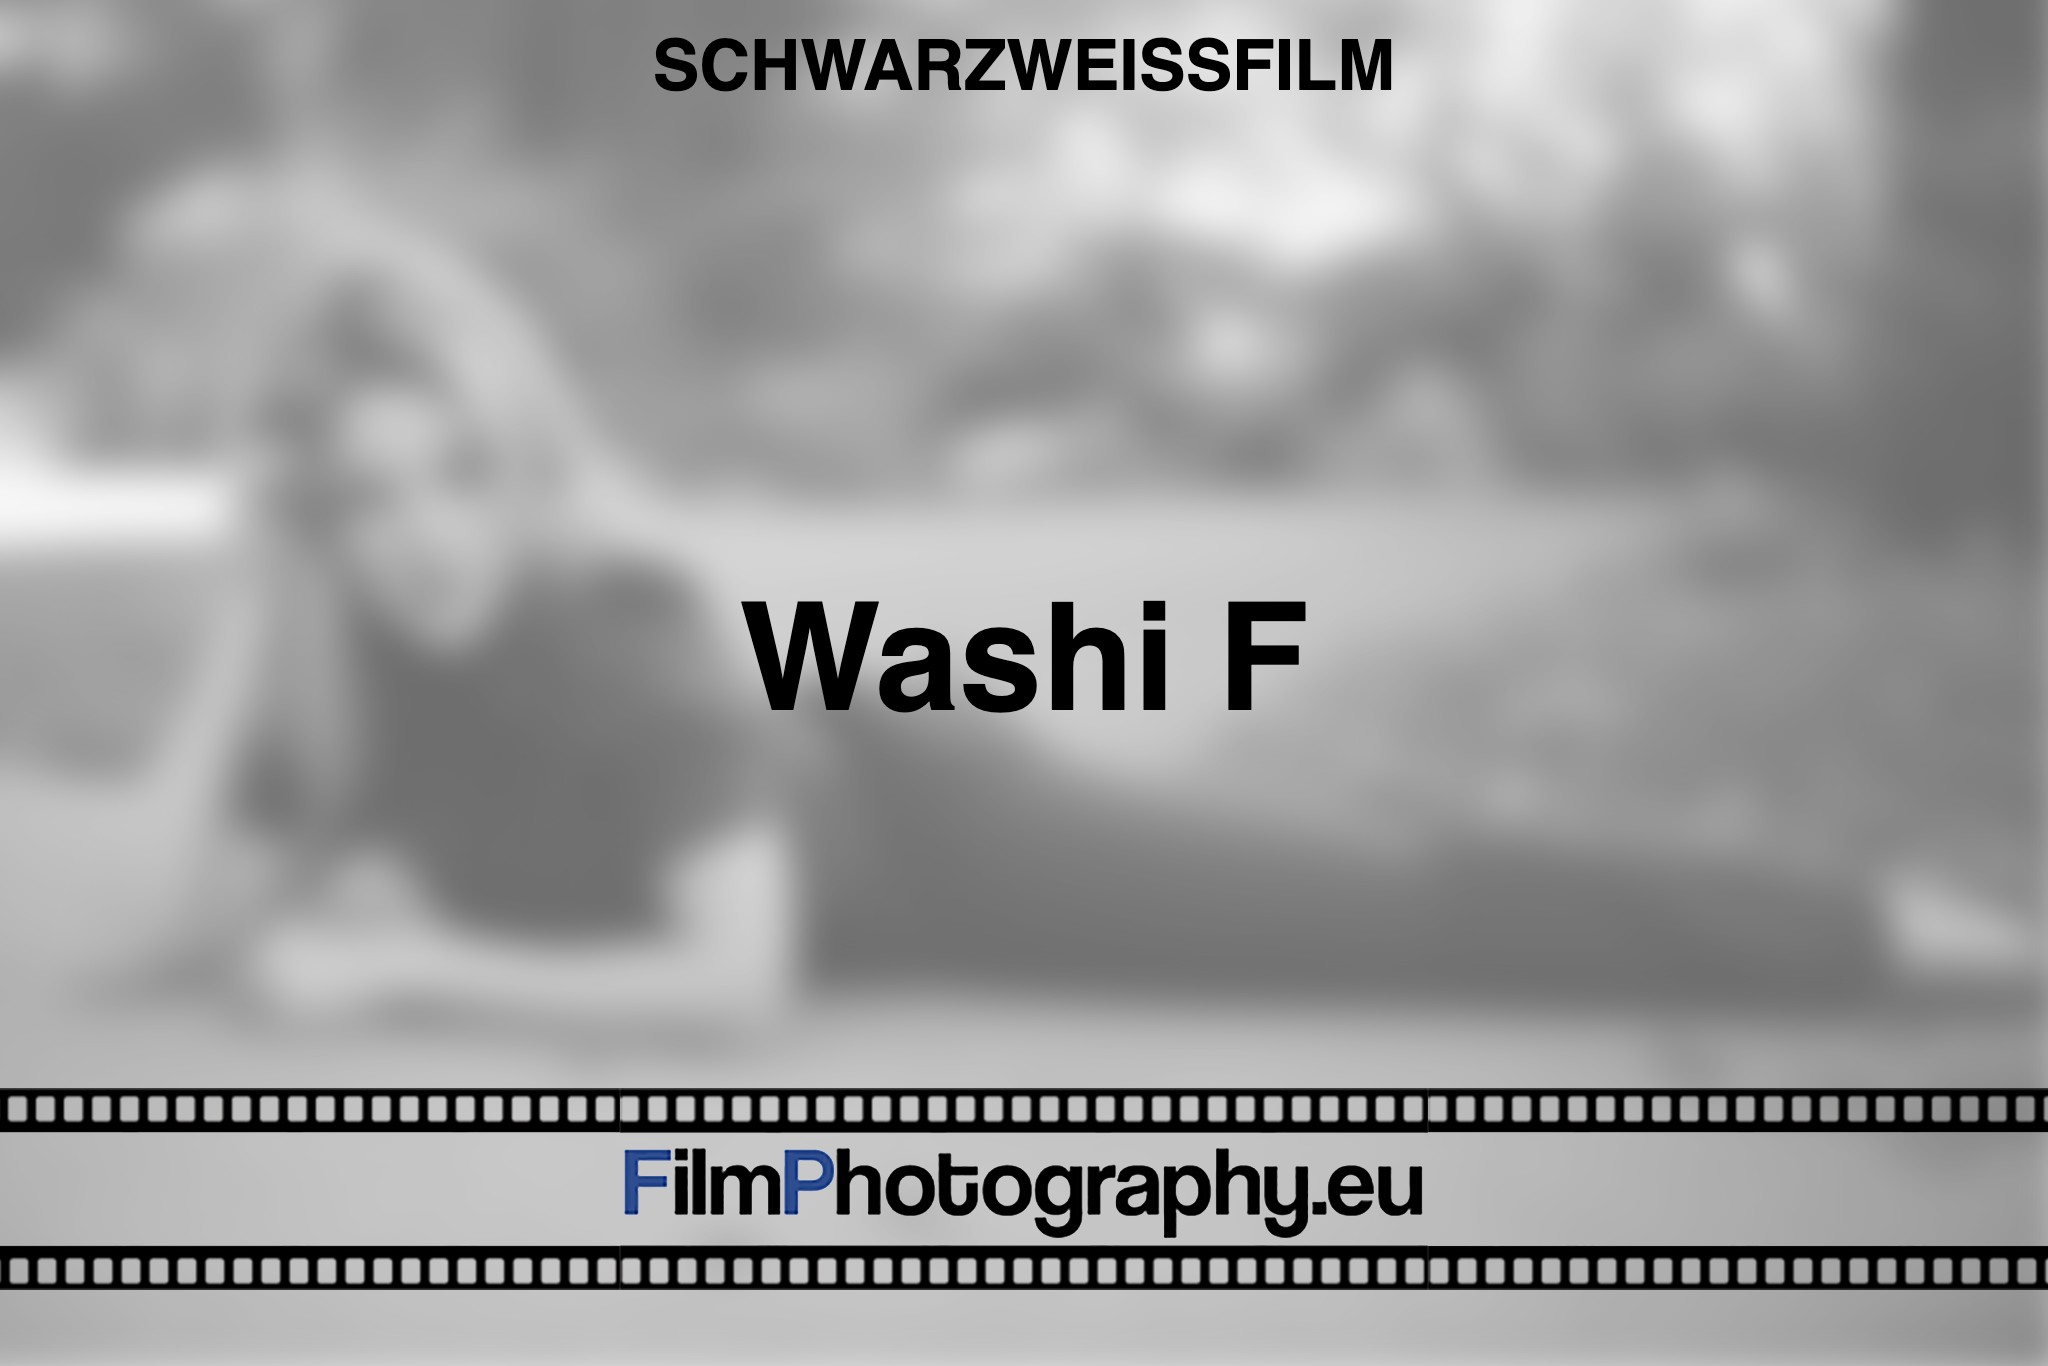 washi-f-schwarzweißfilm-bnv